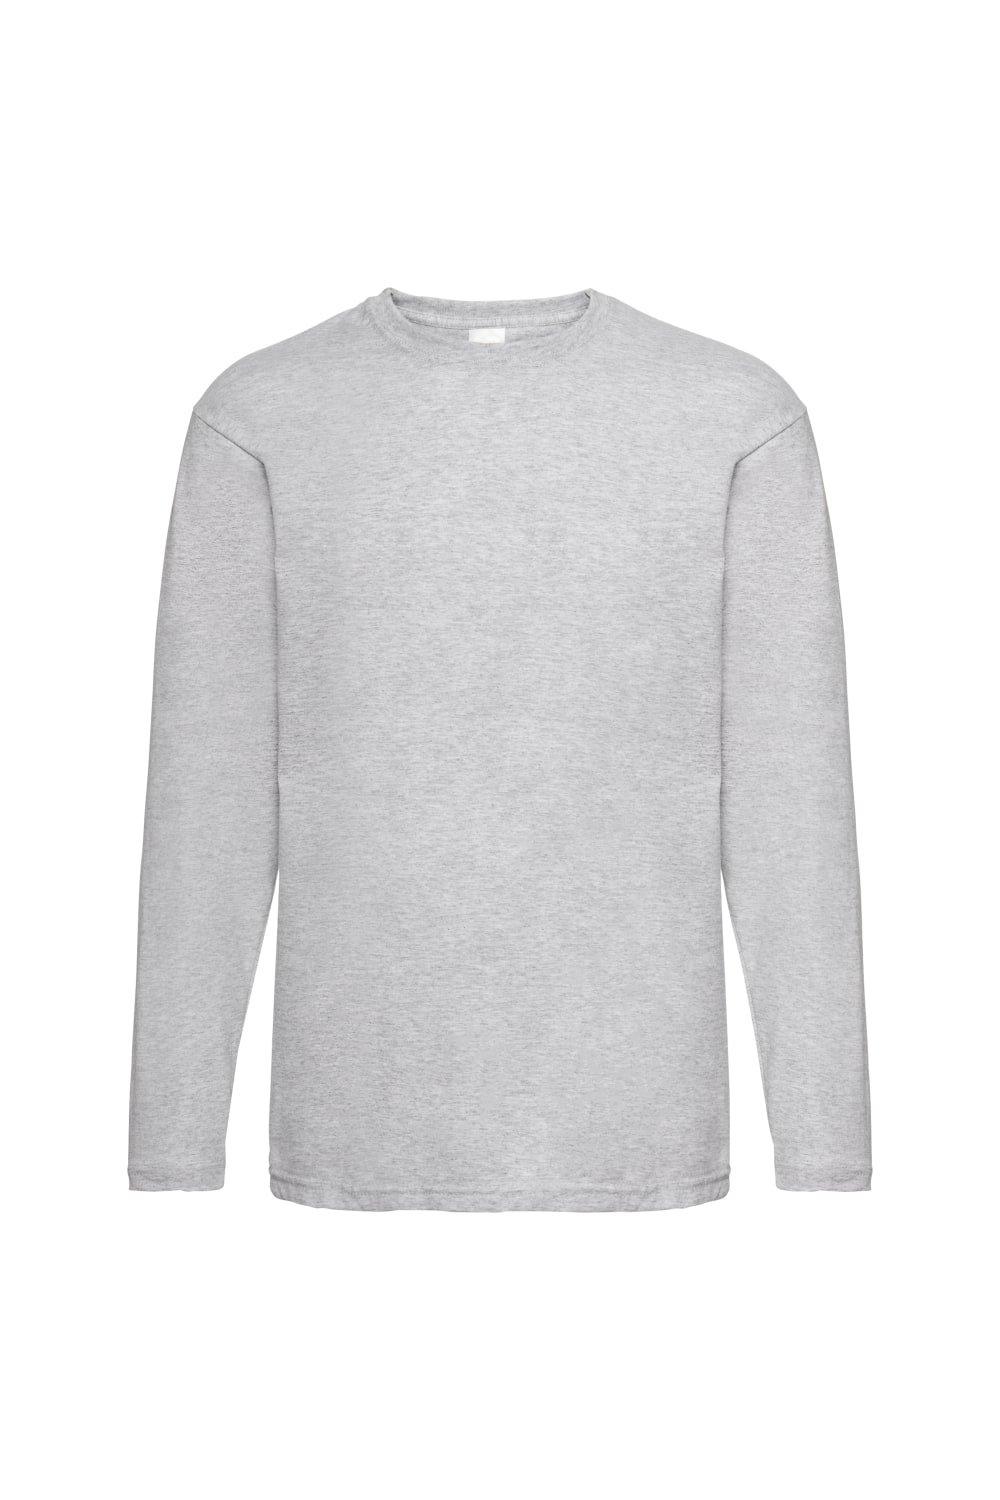 Повседневная футболка Value с длинным рукавом Universal Textiles, серый мужская футболка кот с мороженым 2xl серый меланж